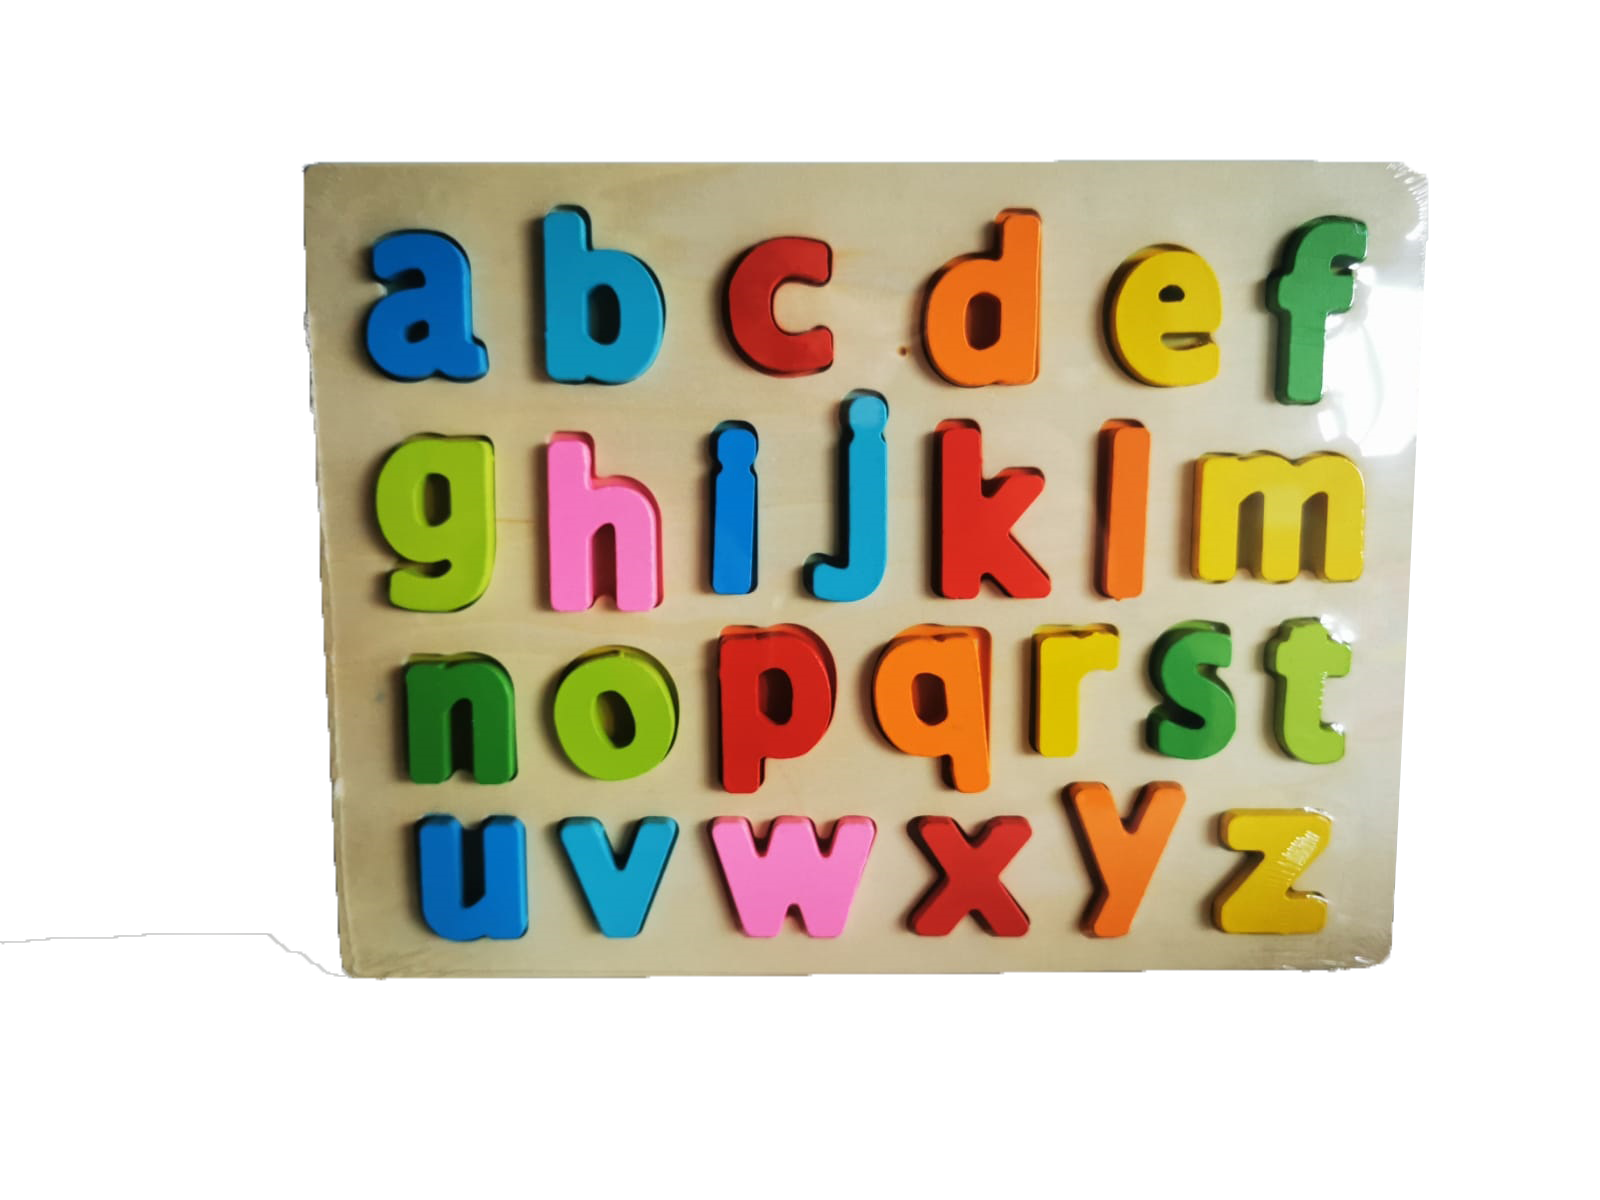 Reprezinta un hobby pentru toate varstele. Acest puzzle contine litere  si fiecare piesa trebuie introdusa in forma care ii apartine.

Ii ajuta pe cei mici sa invete mai usor alfabetul si semnele de baza  , dar le dezvolta si simtul observatiei.

 